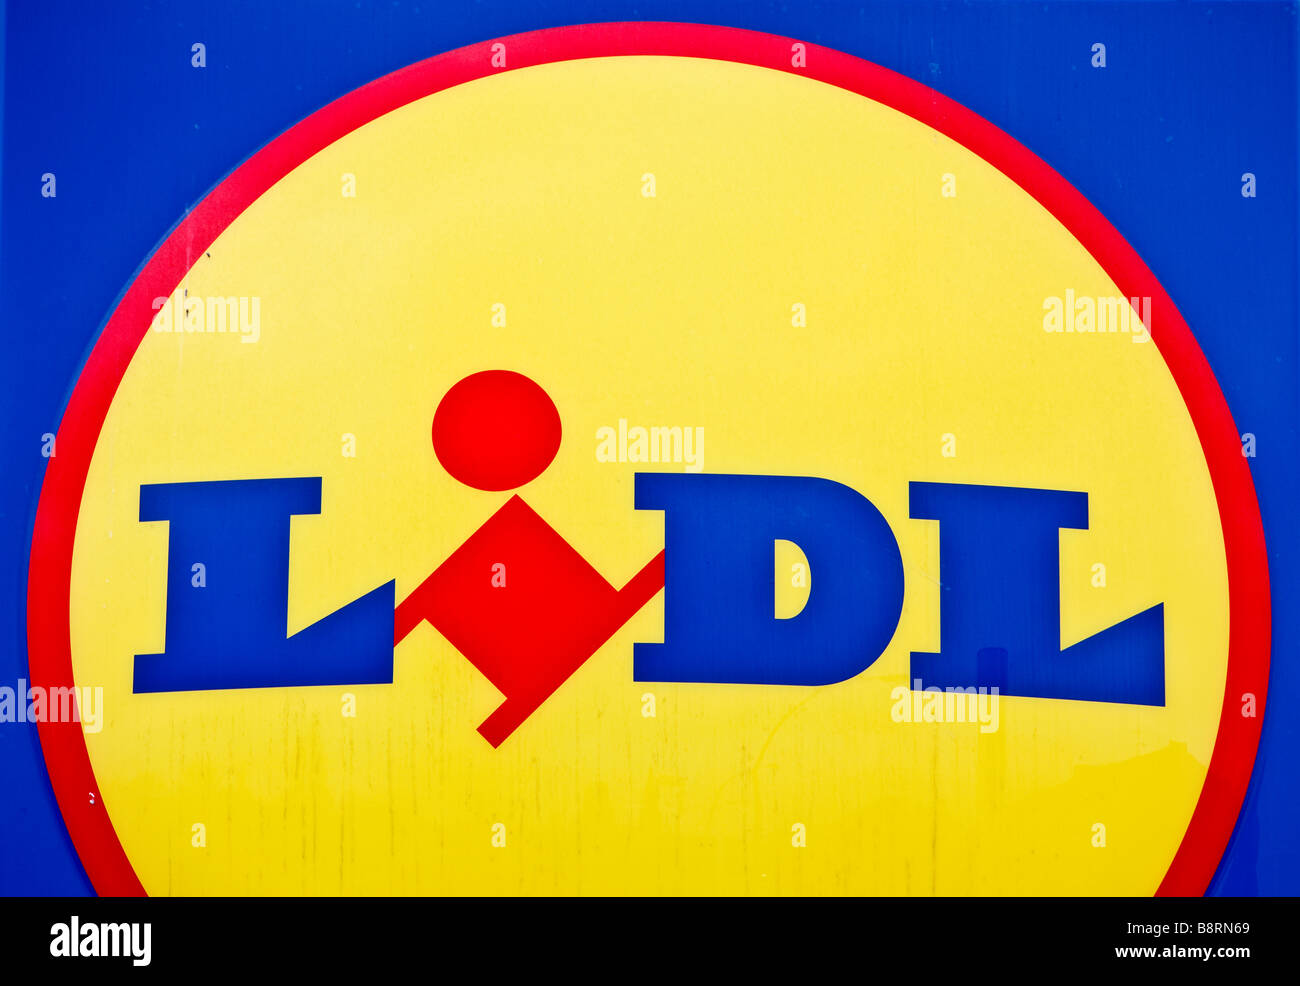 Supermercato Lidl logo negozio segno Foto Stock